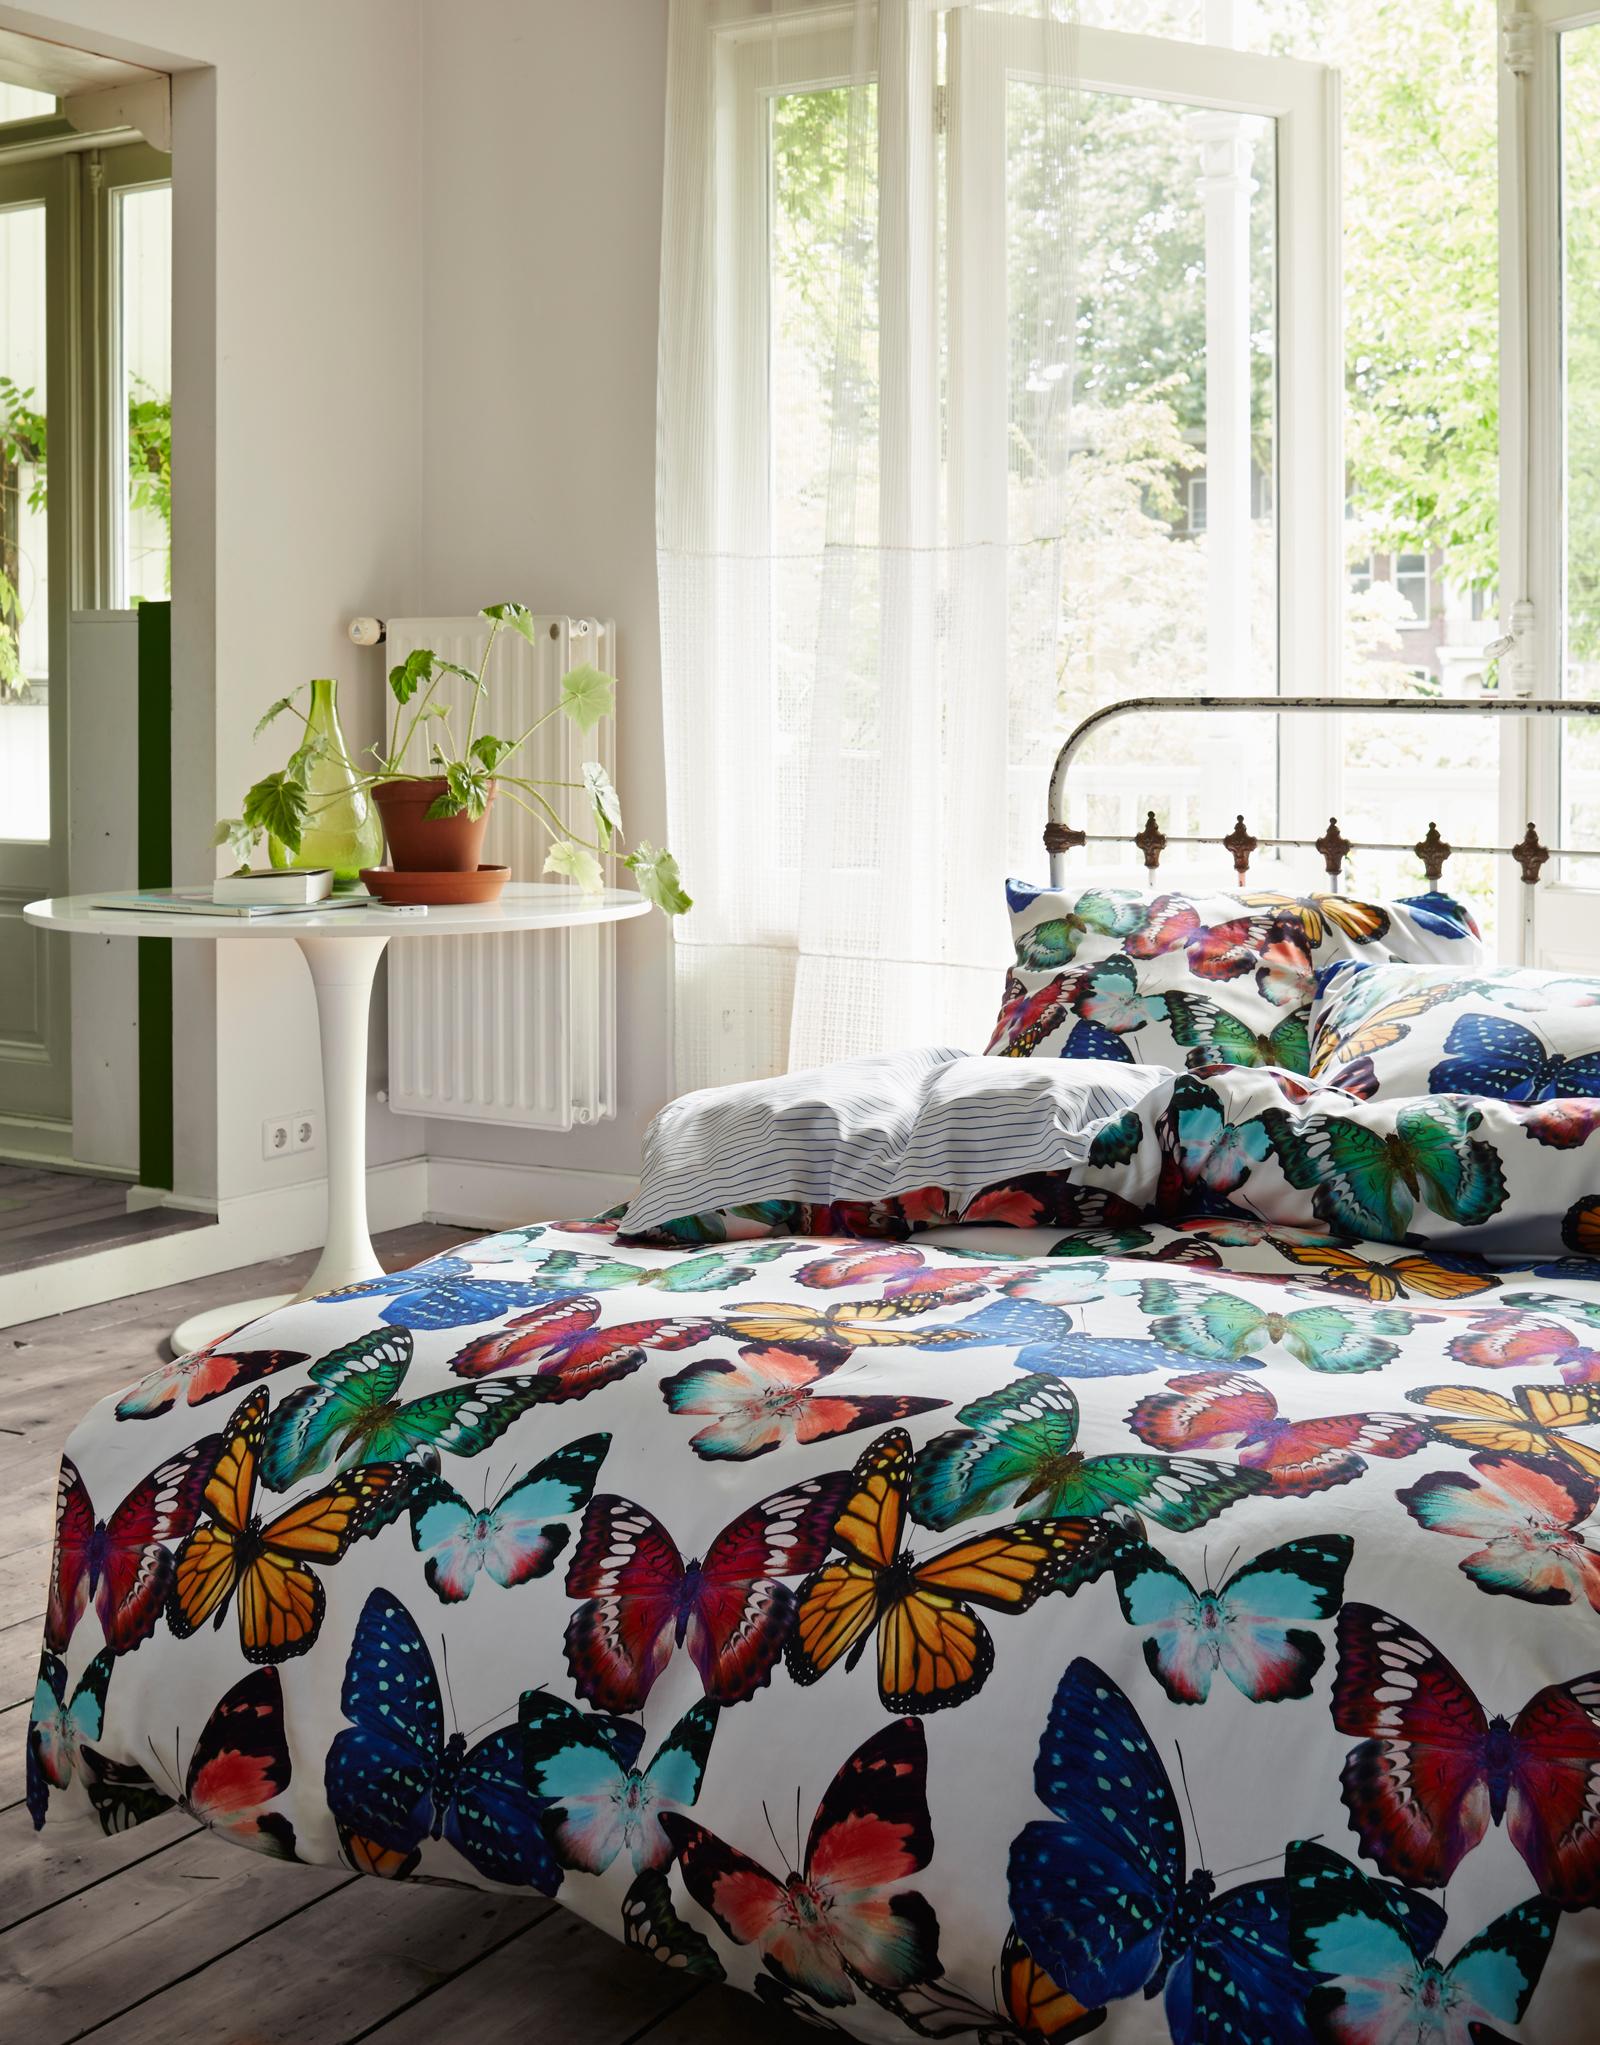 Bettbezug mit Schmetterlingen #dielenboden #bettwäsche #terrassentür ©Essenza Home/Vanezza